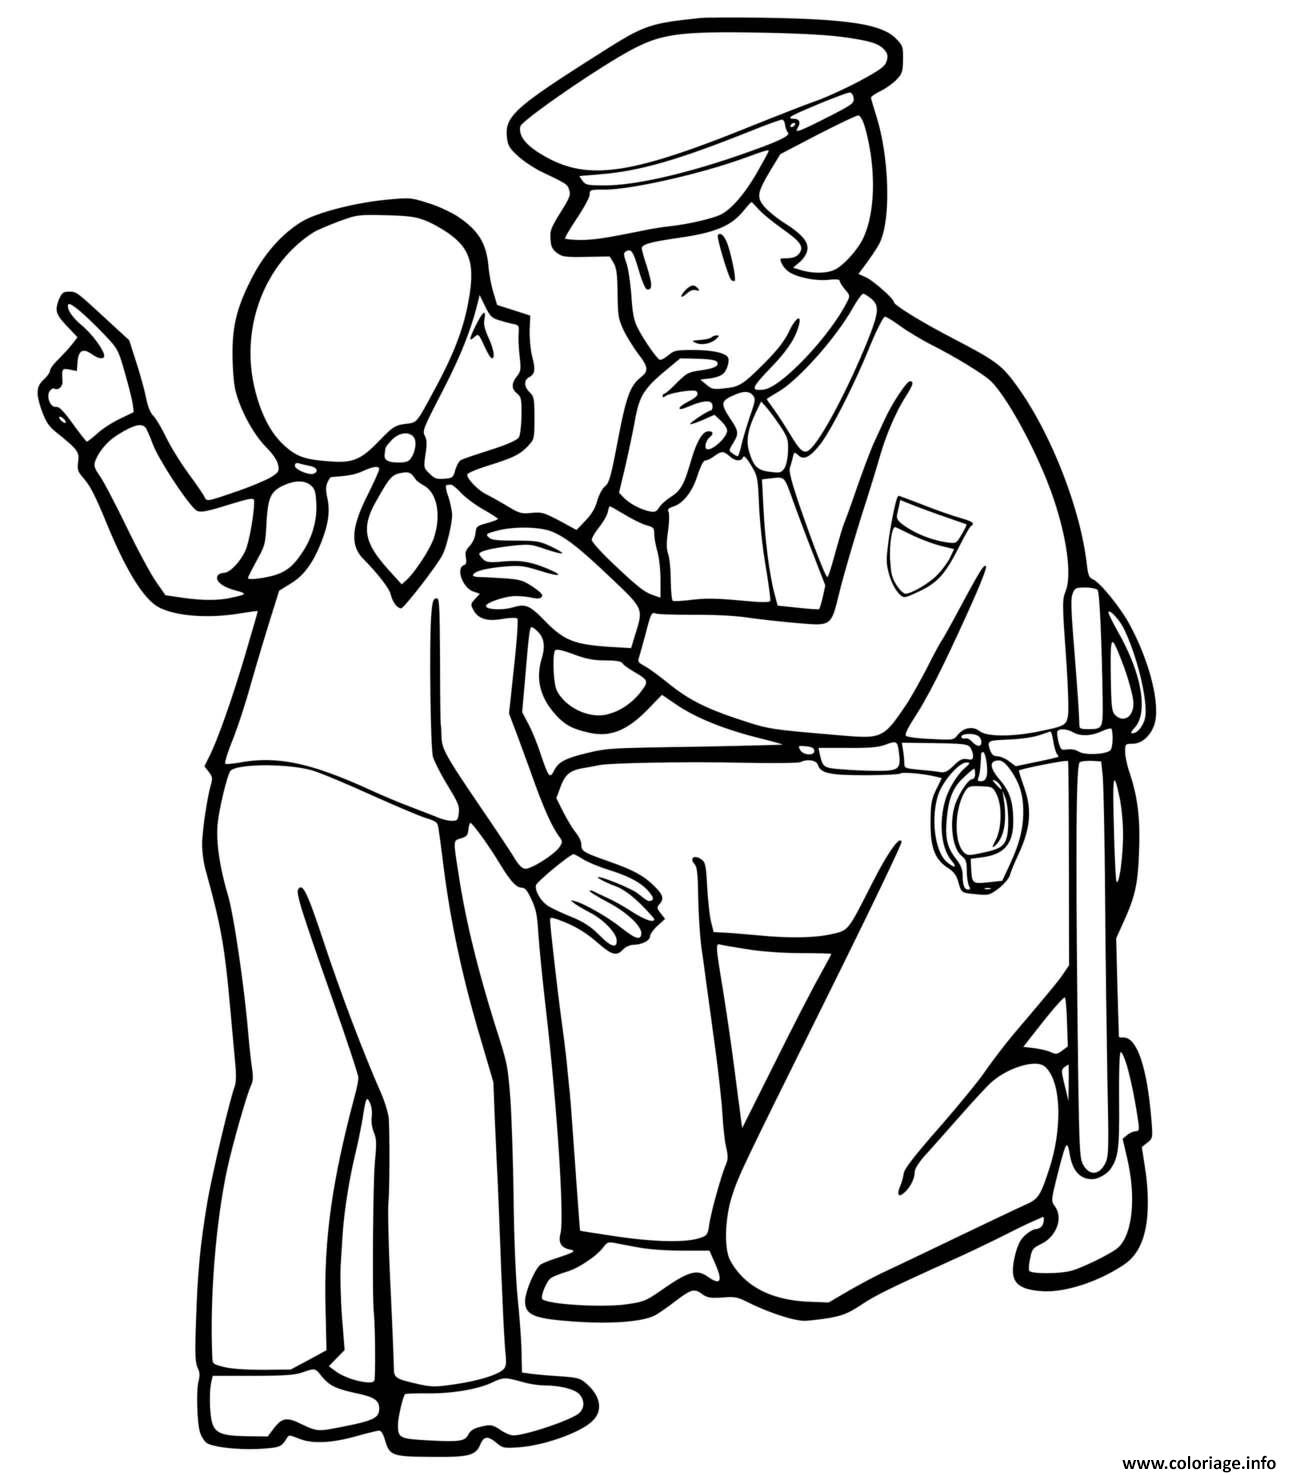 Dessin un petite fille parle avec une agente de police Coloriage Gratuit à Imprimer